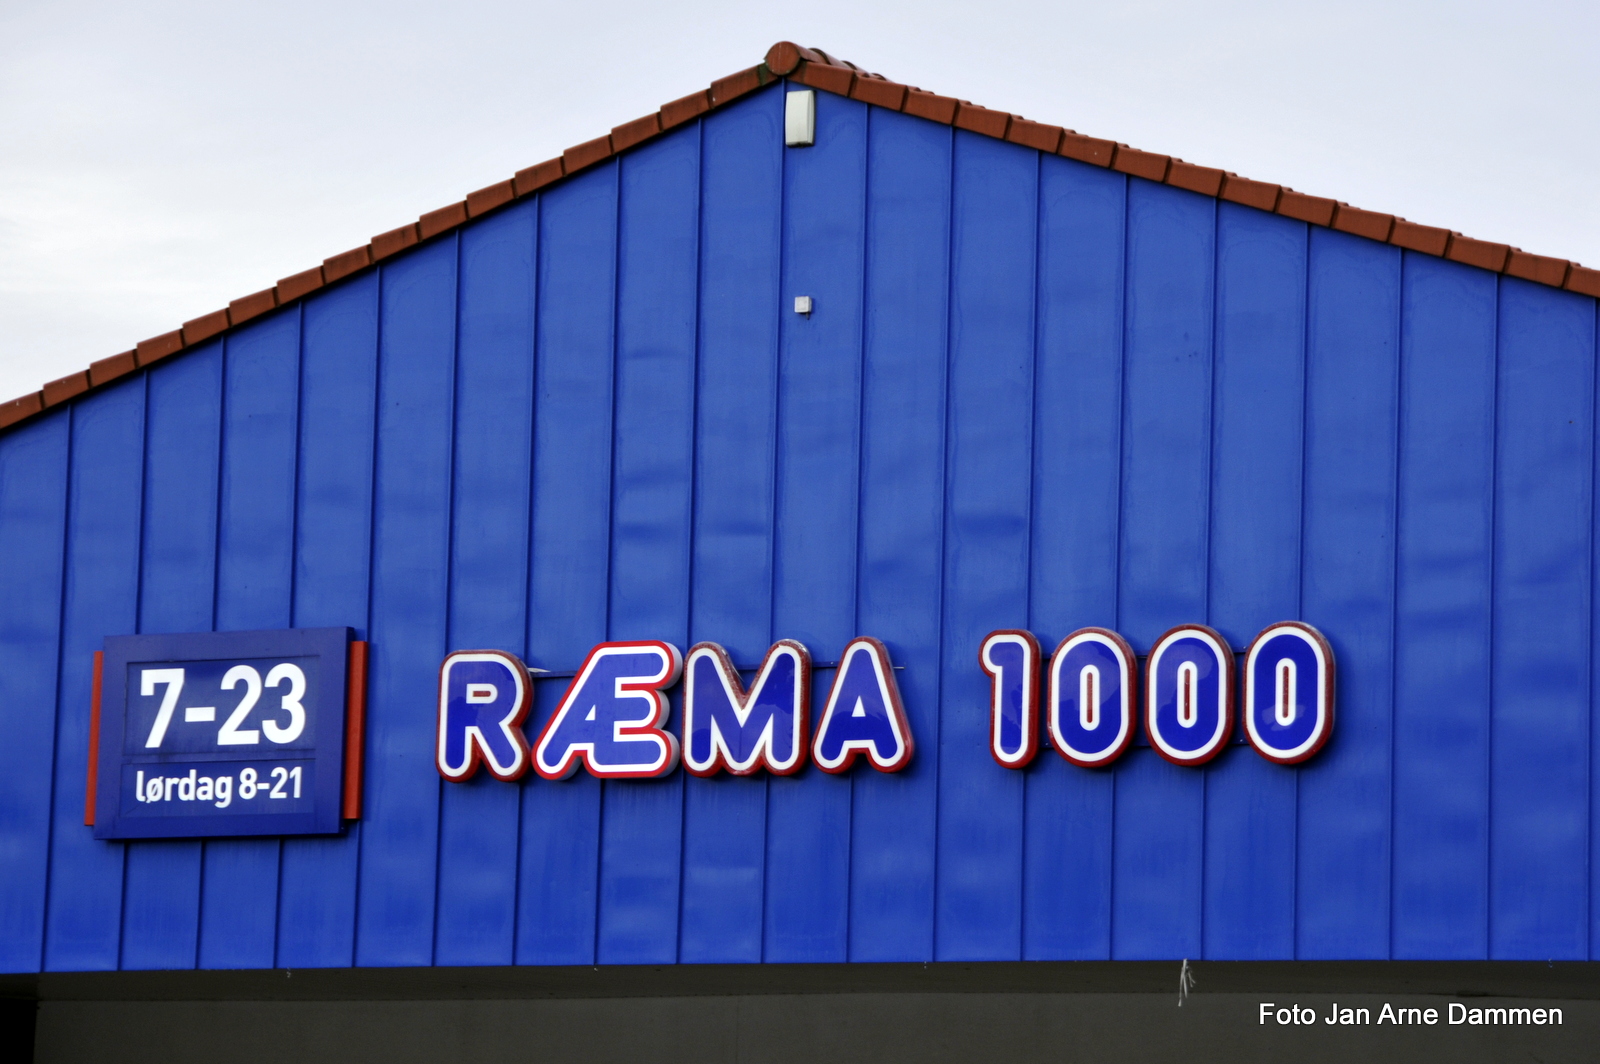 REMA 1000 er blitt til RÆMA 1000 over natta Foto Jan Arne Dammen